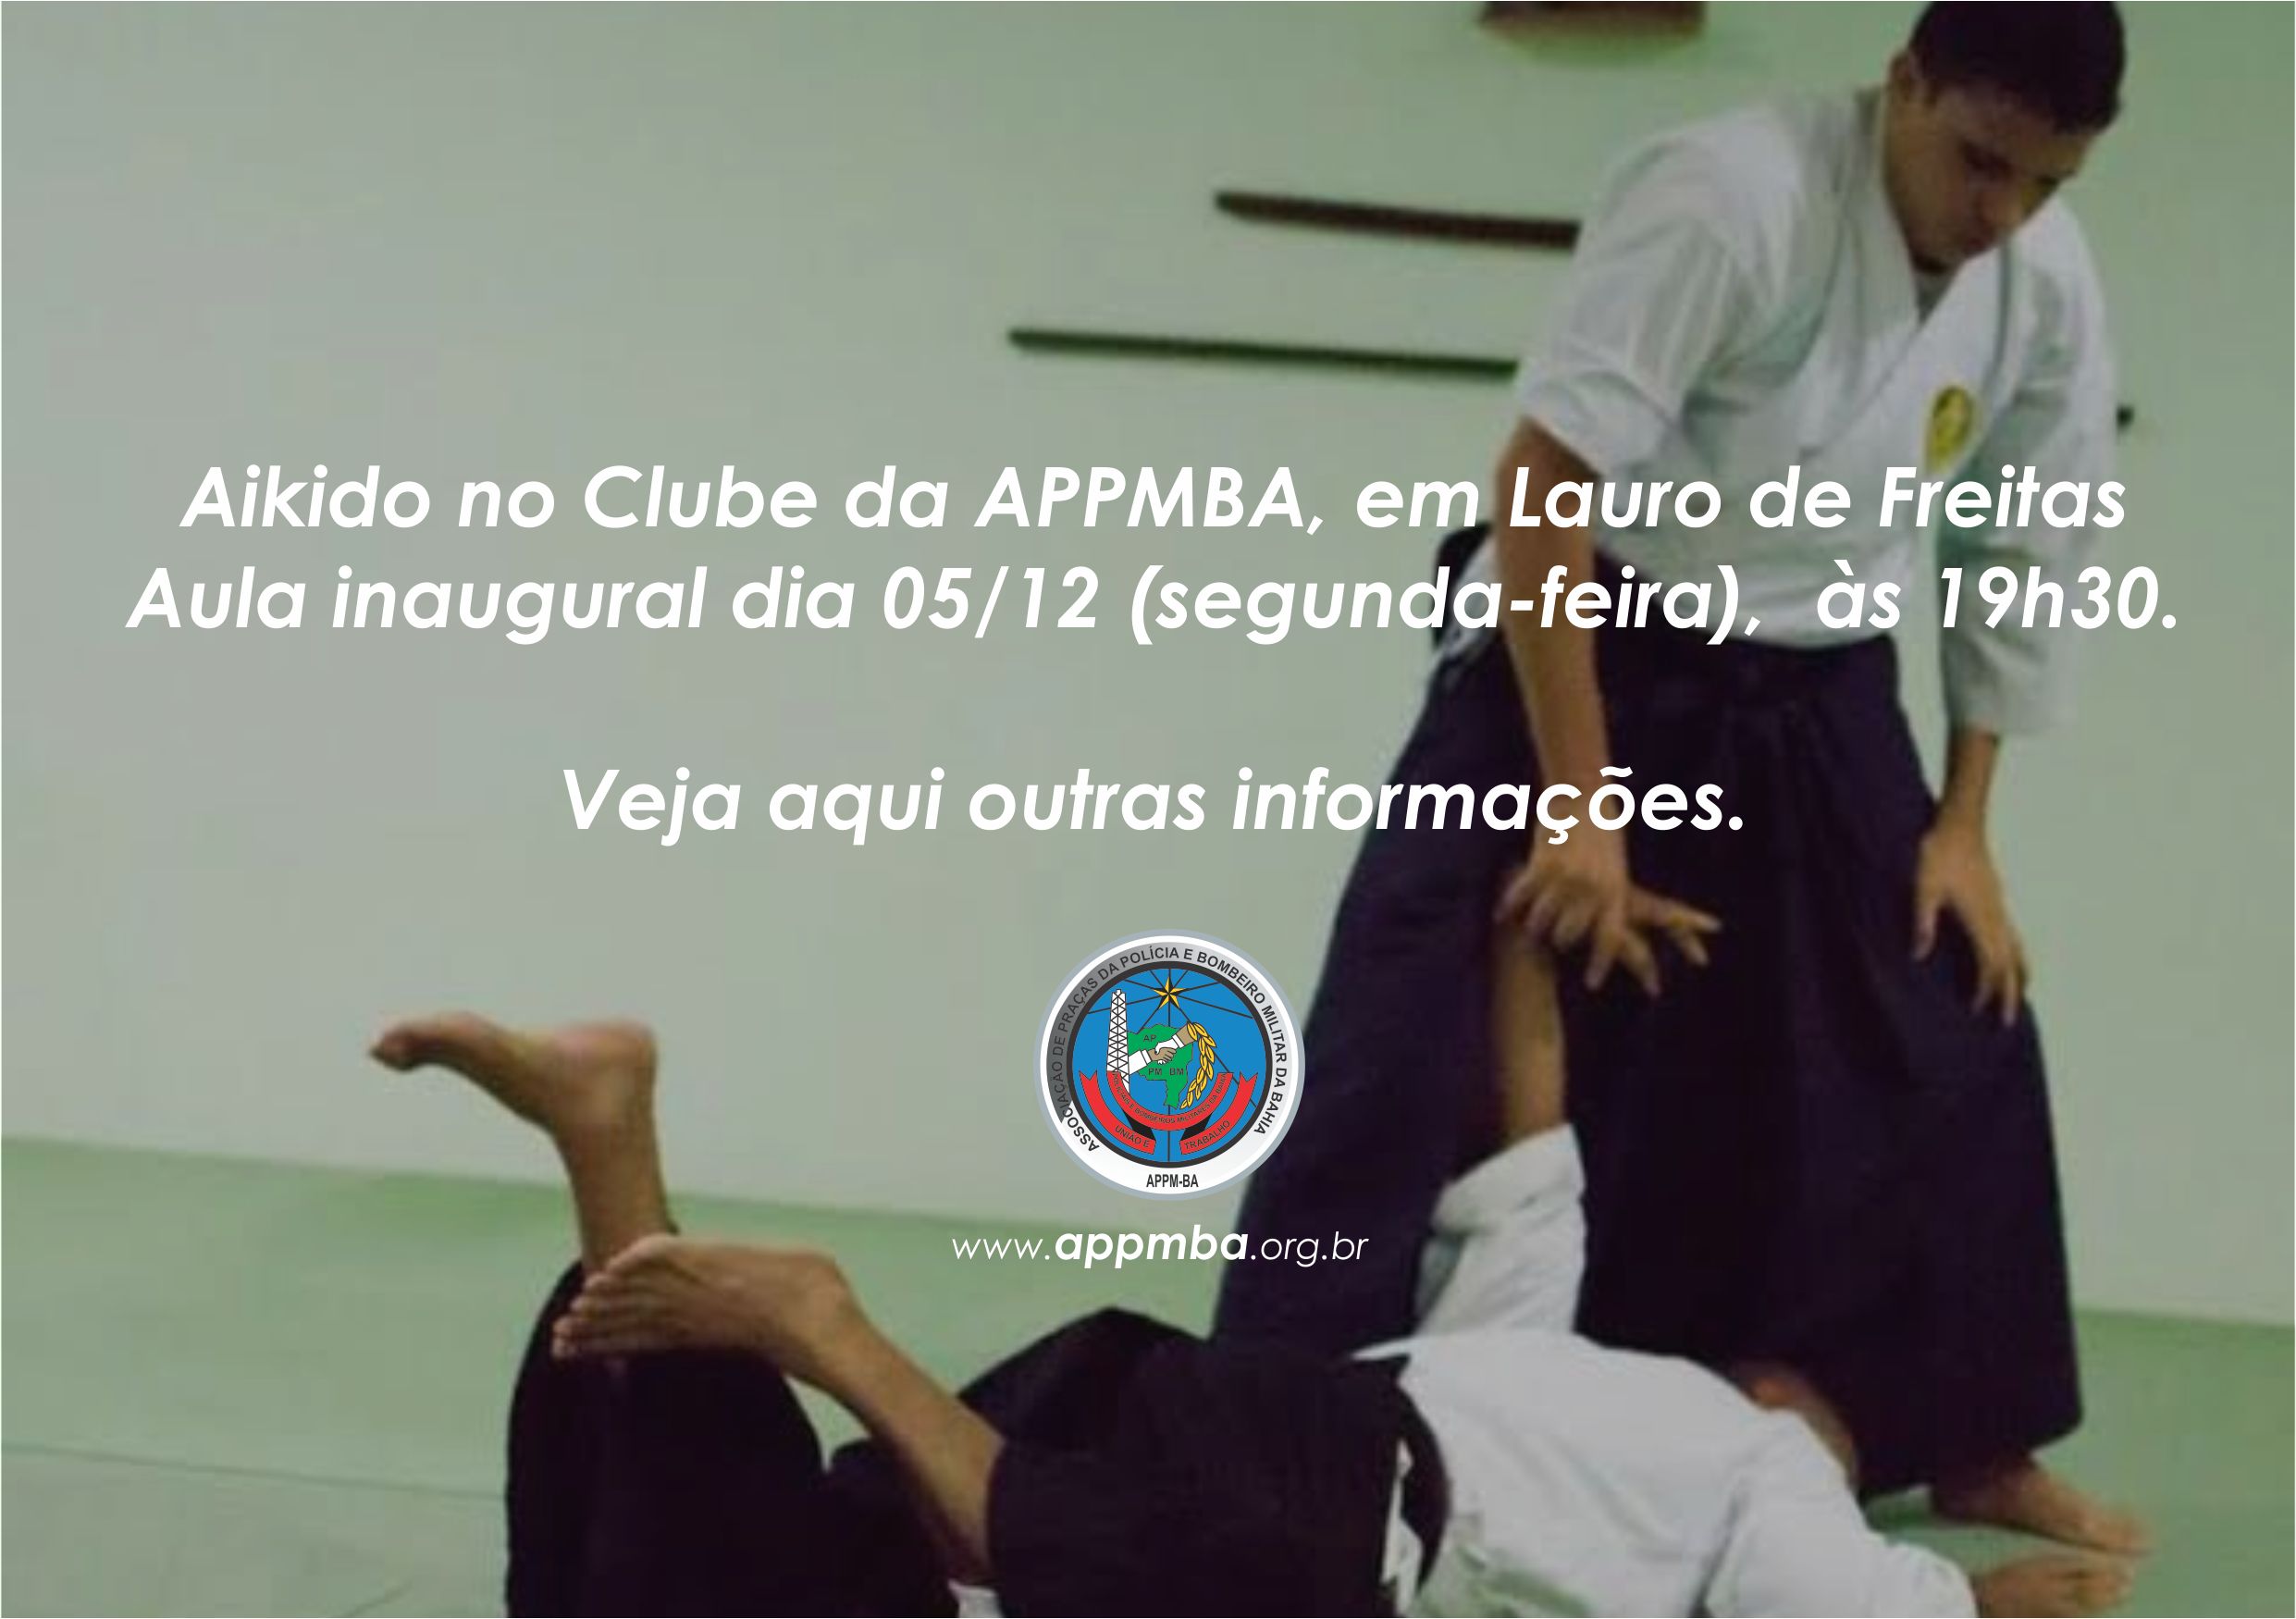 APPMBA promove aulas de Aikido